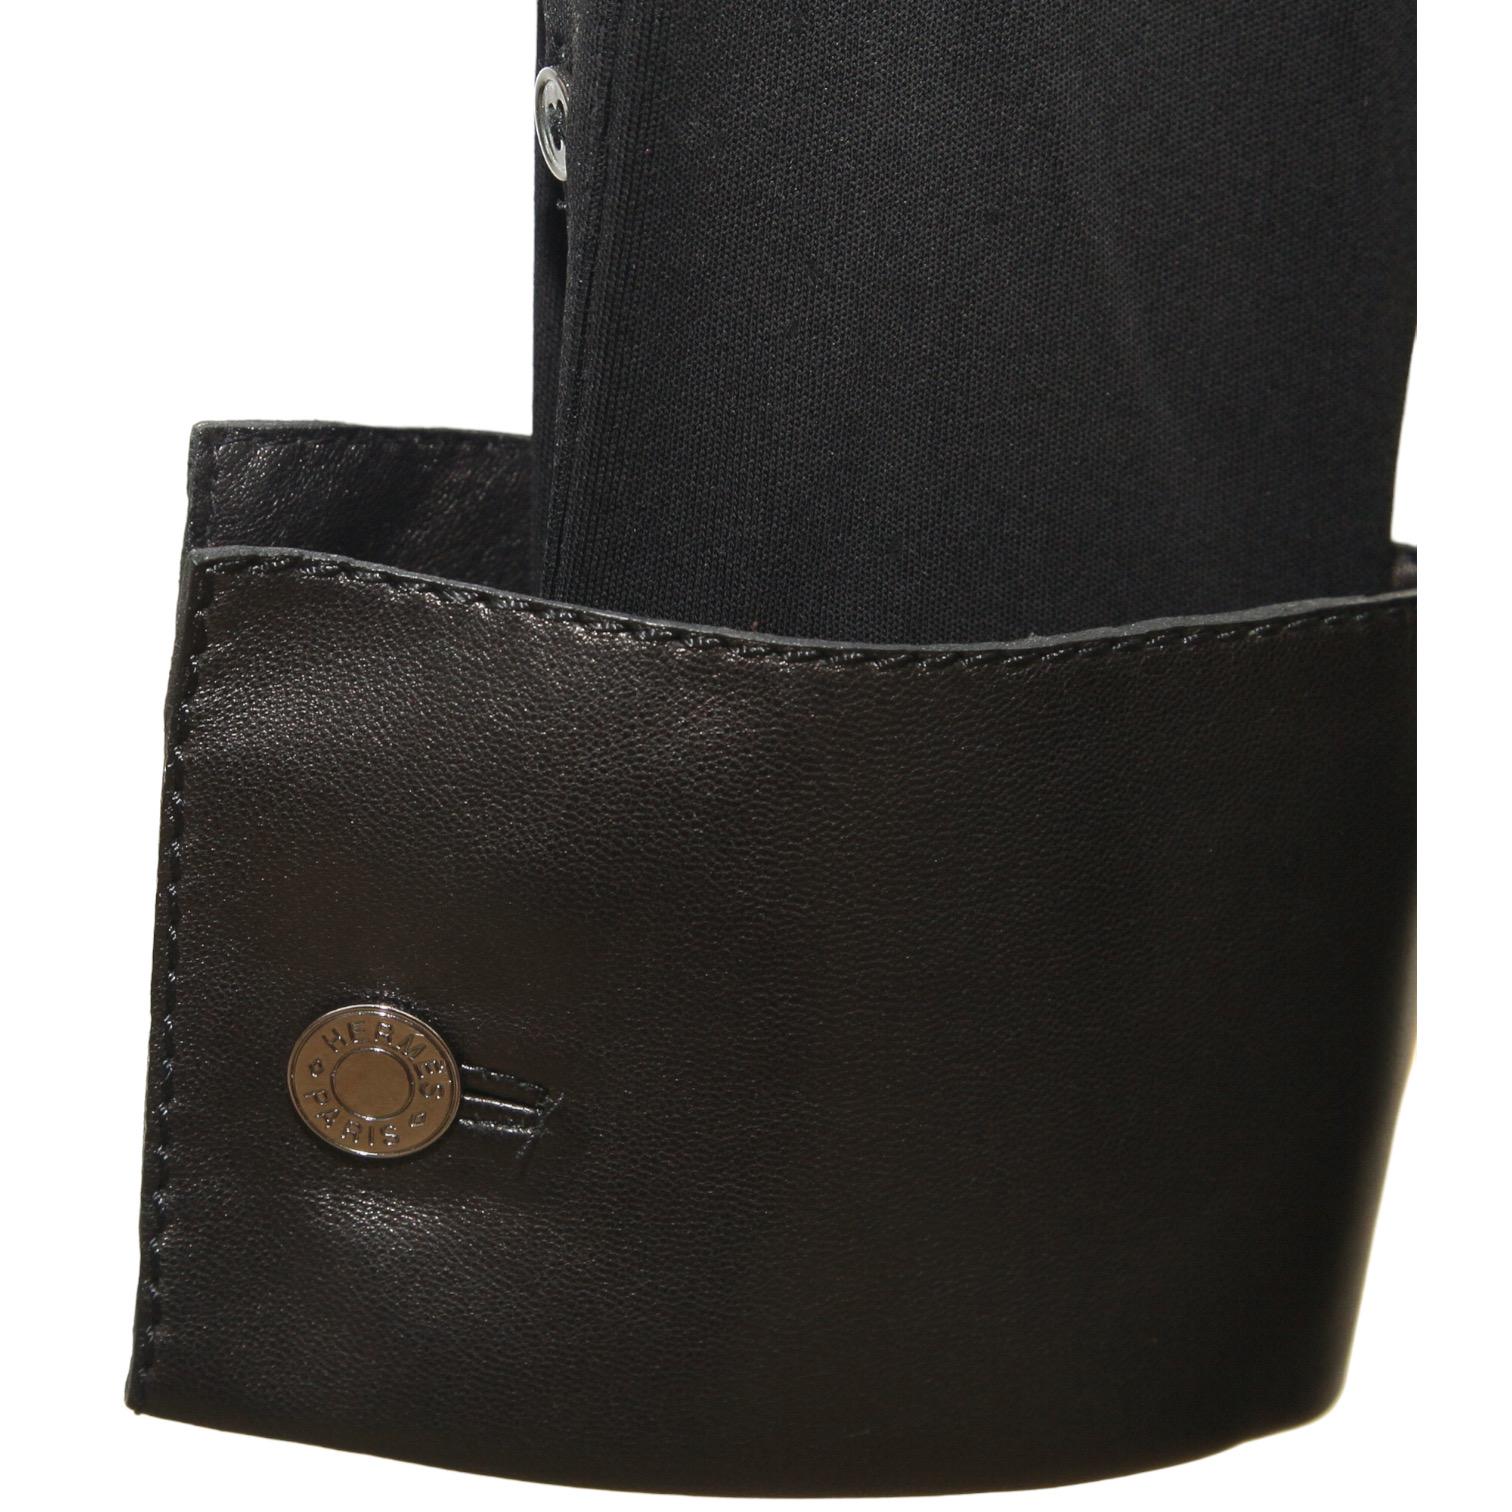 HERMES Black Blouse Shirt Top Leather Viscose Palladium Buttons Sz 42 VINTAGE For Sale 2